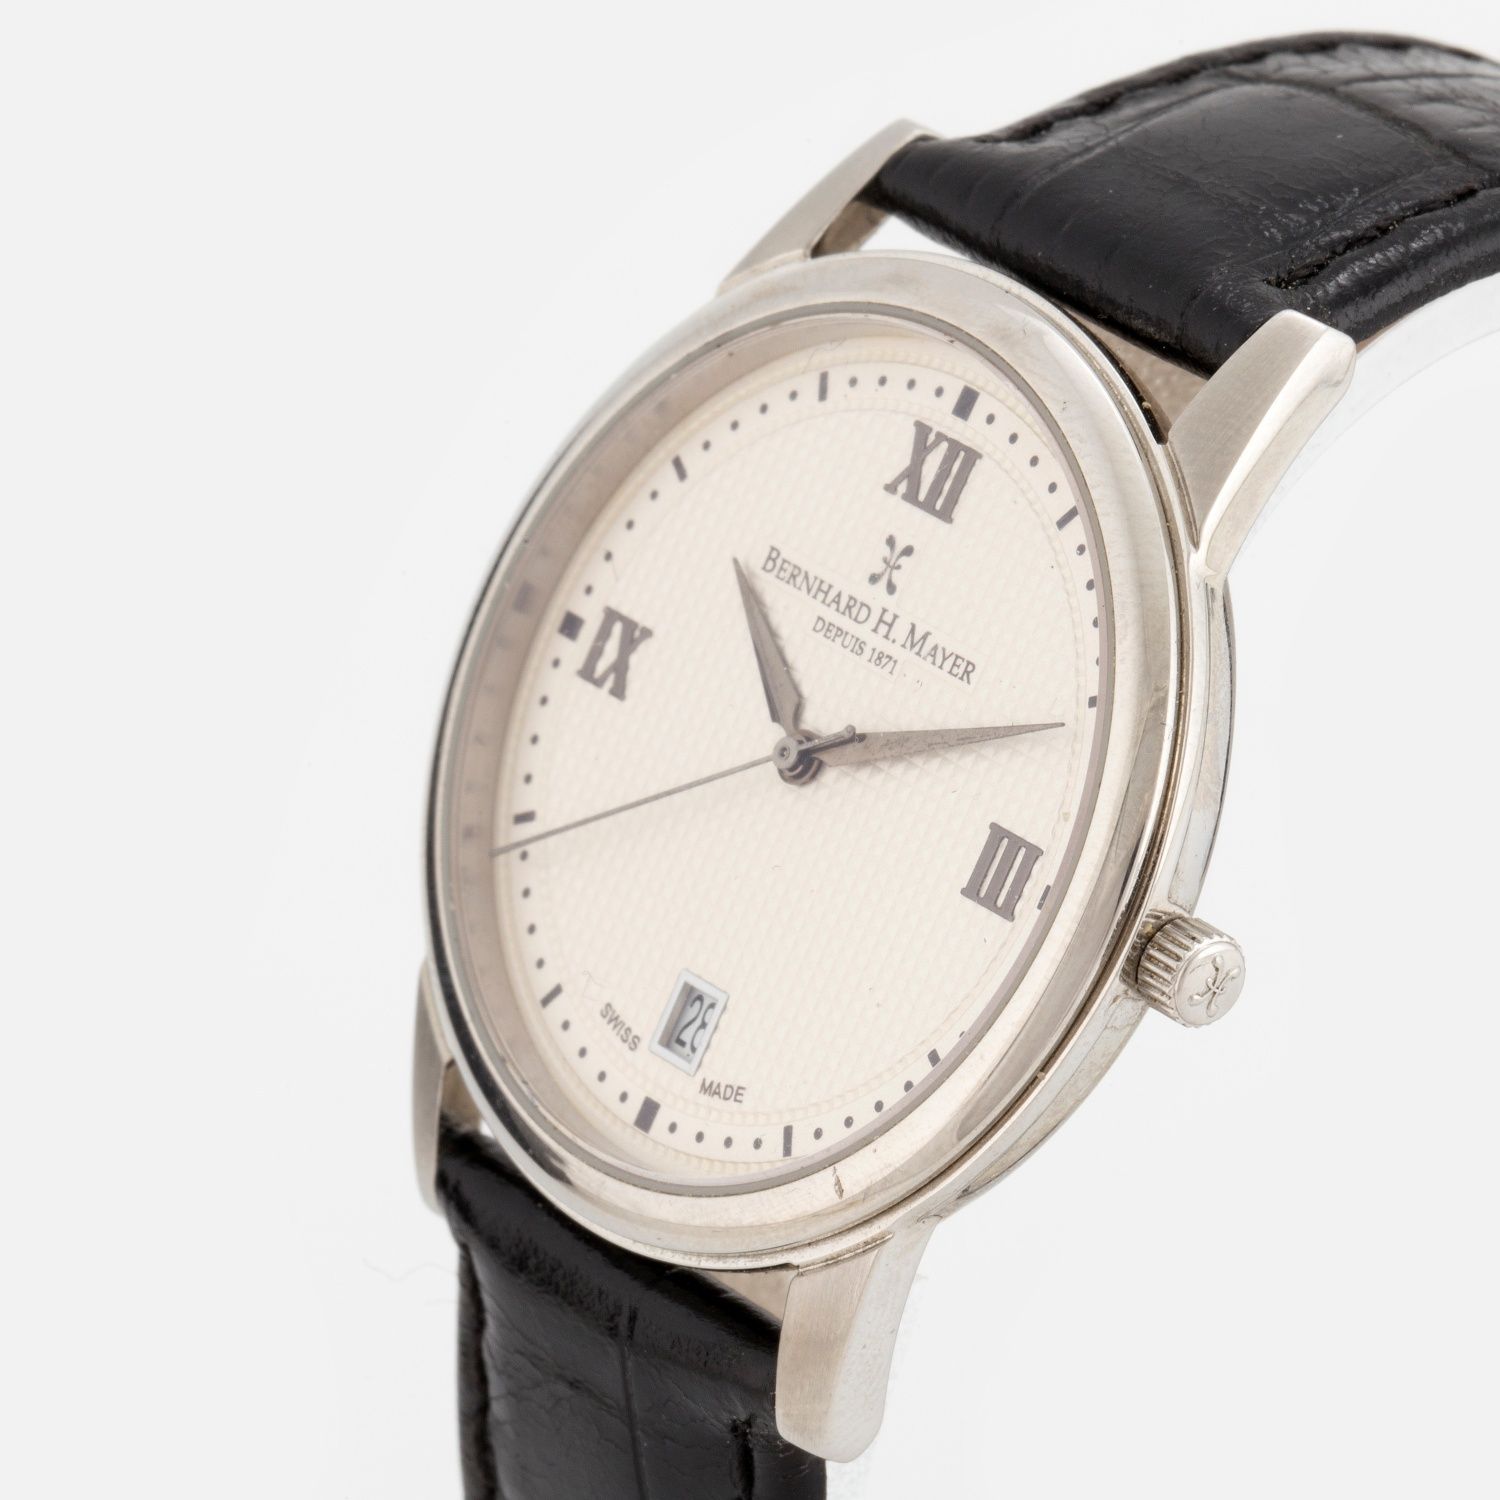 Bernhard h mayer Продам часы швейцарские оригинал.